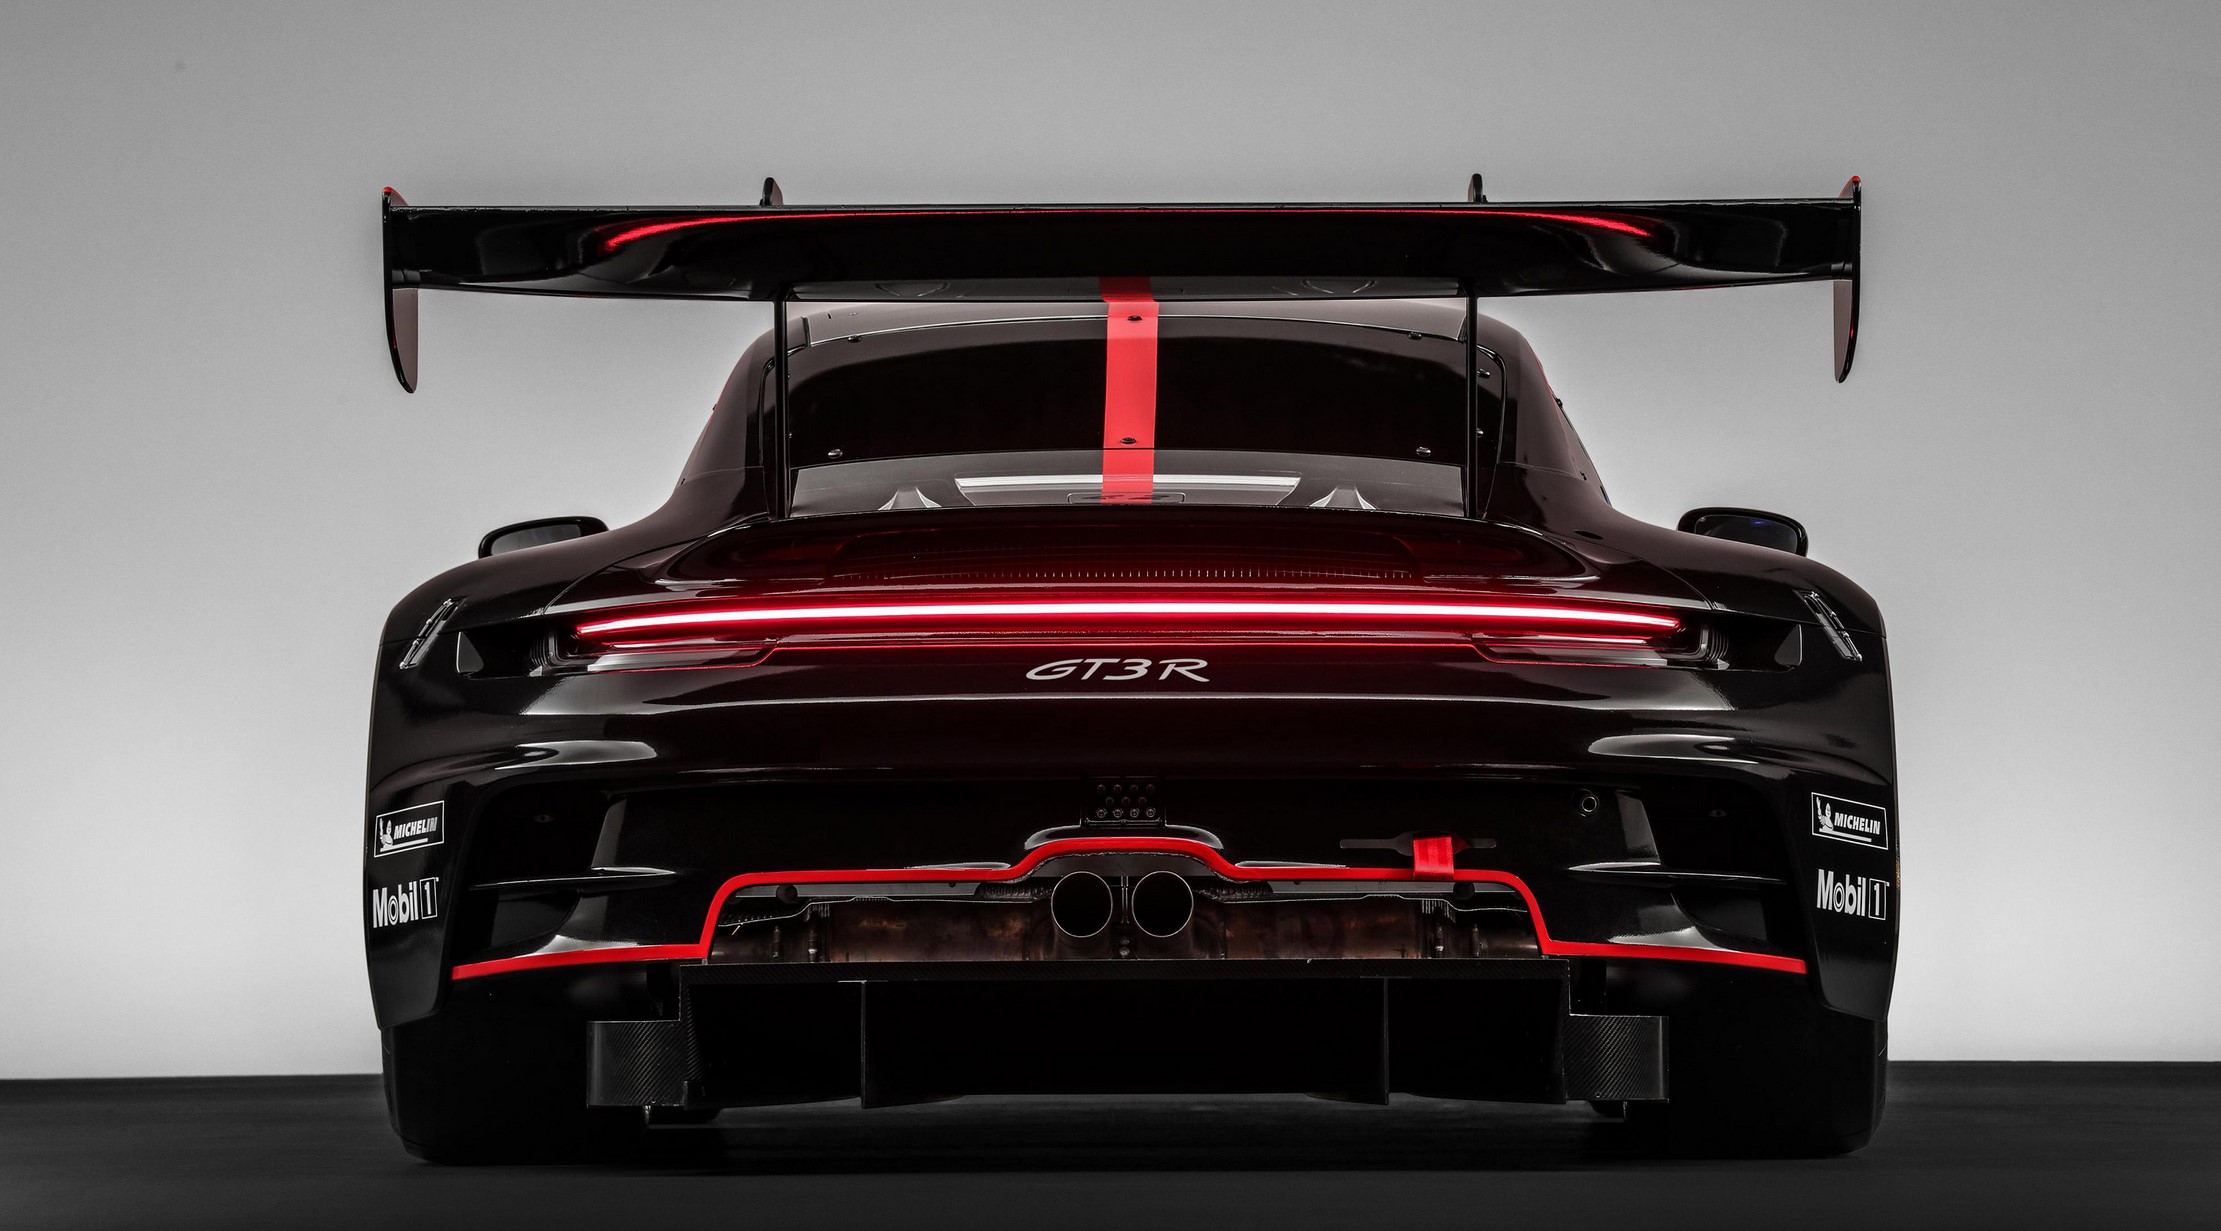 aria-label="Porsche 911 GT3 R rear"